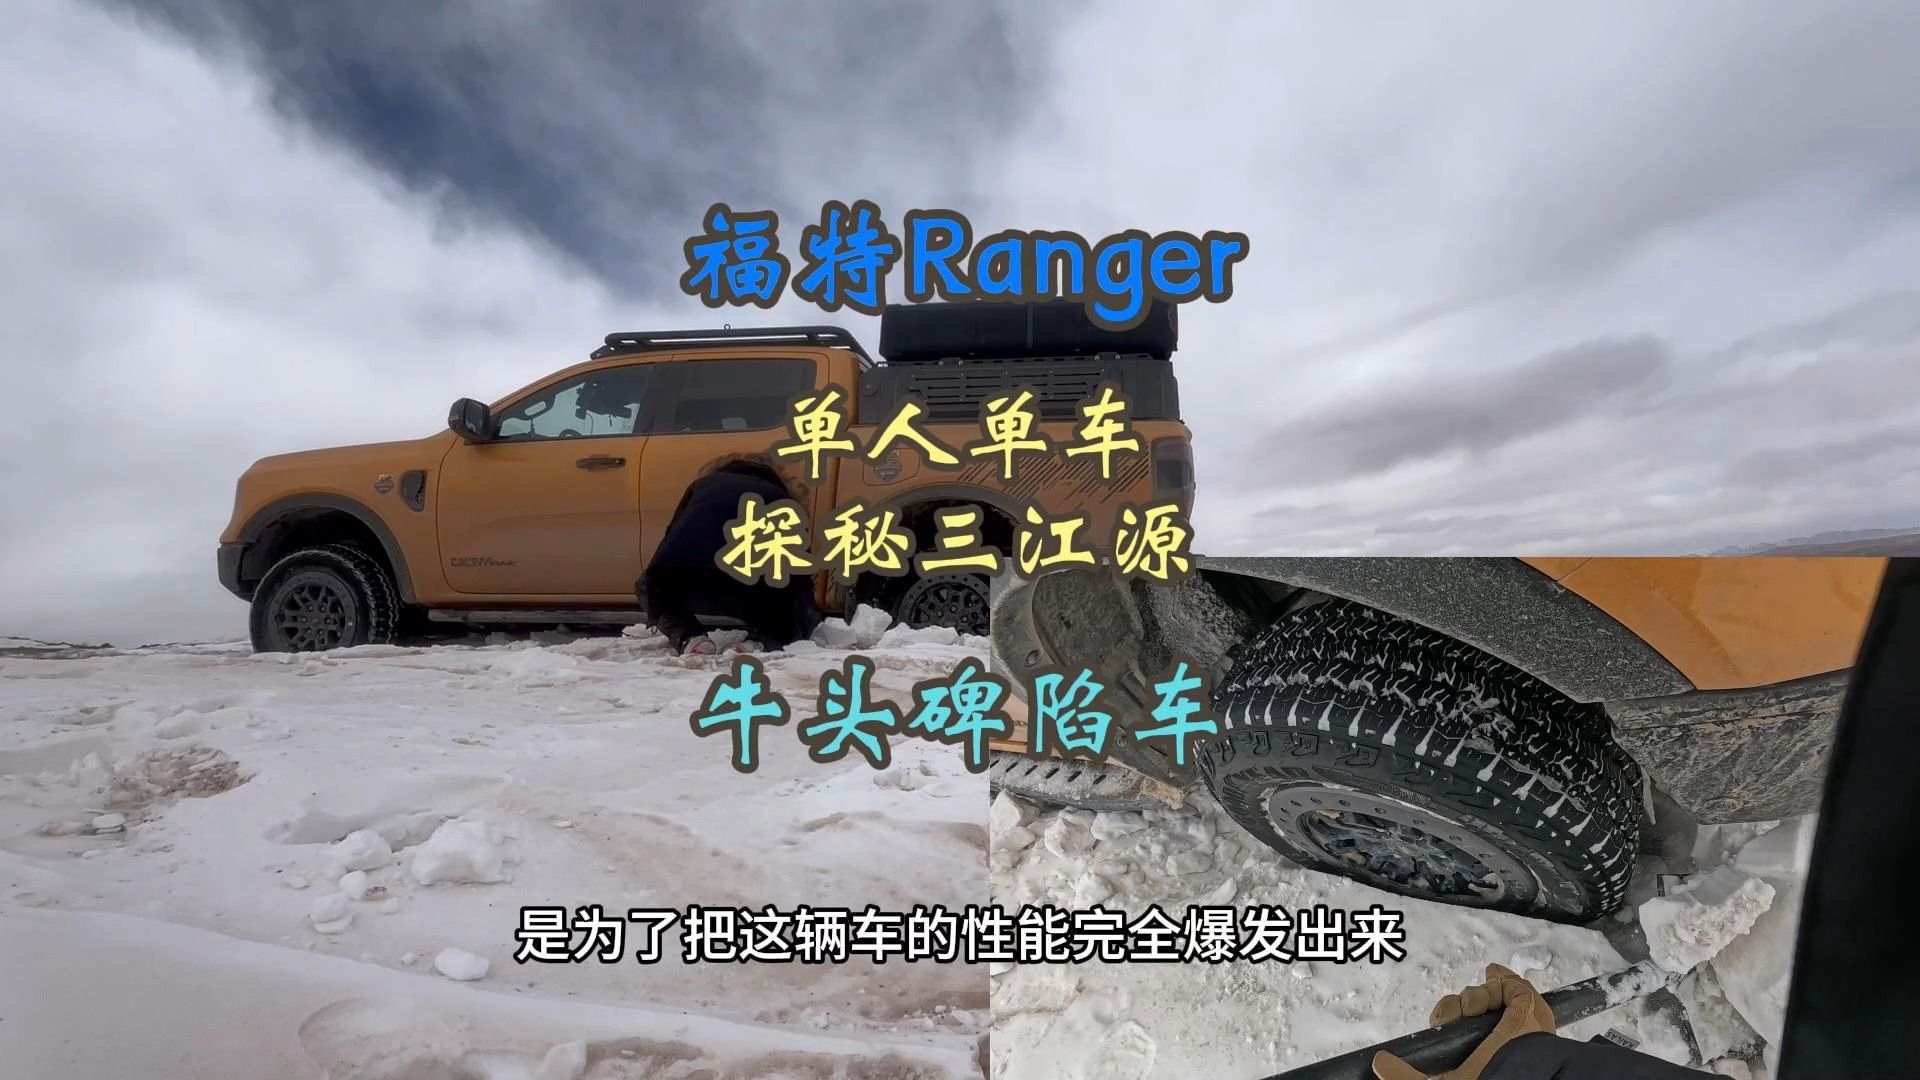 福特Ranger单人单车探秘三江源之牛头碑陷车#福特Ranger #ranger游骑侠 #三江源 #牛头碑